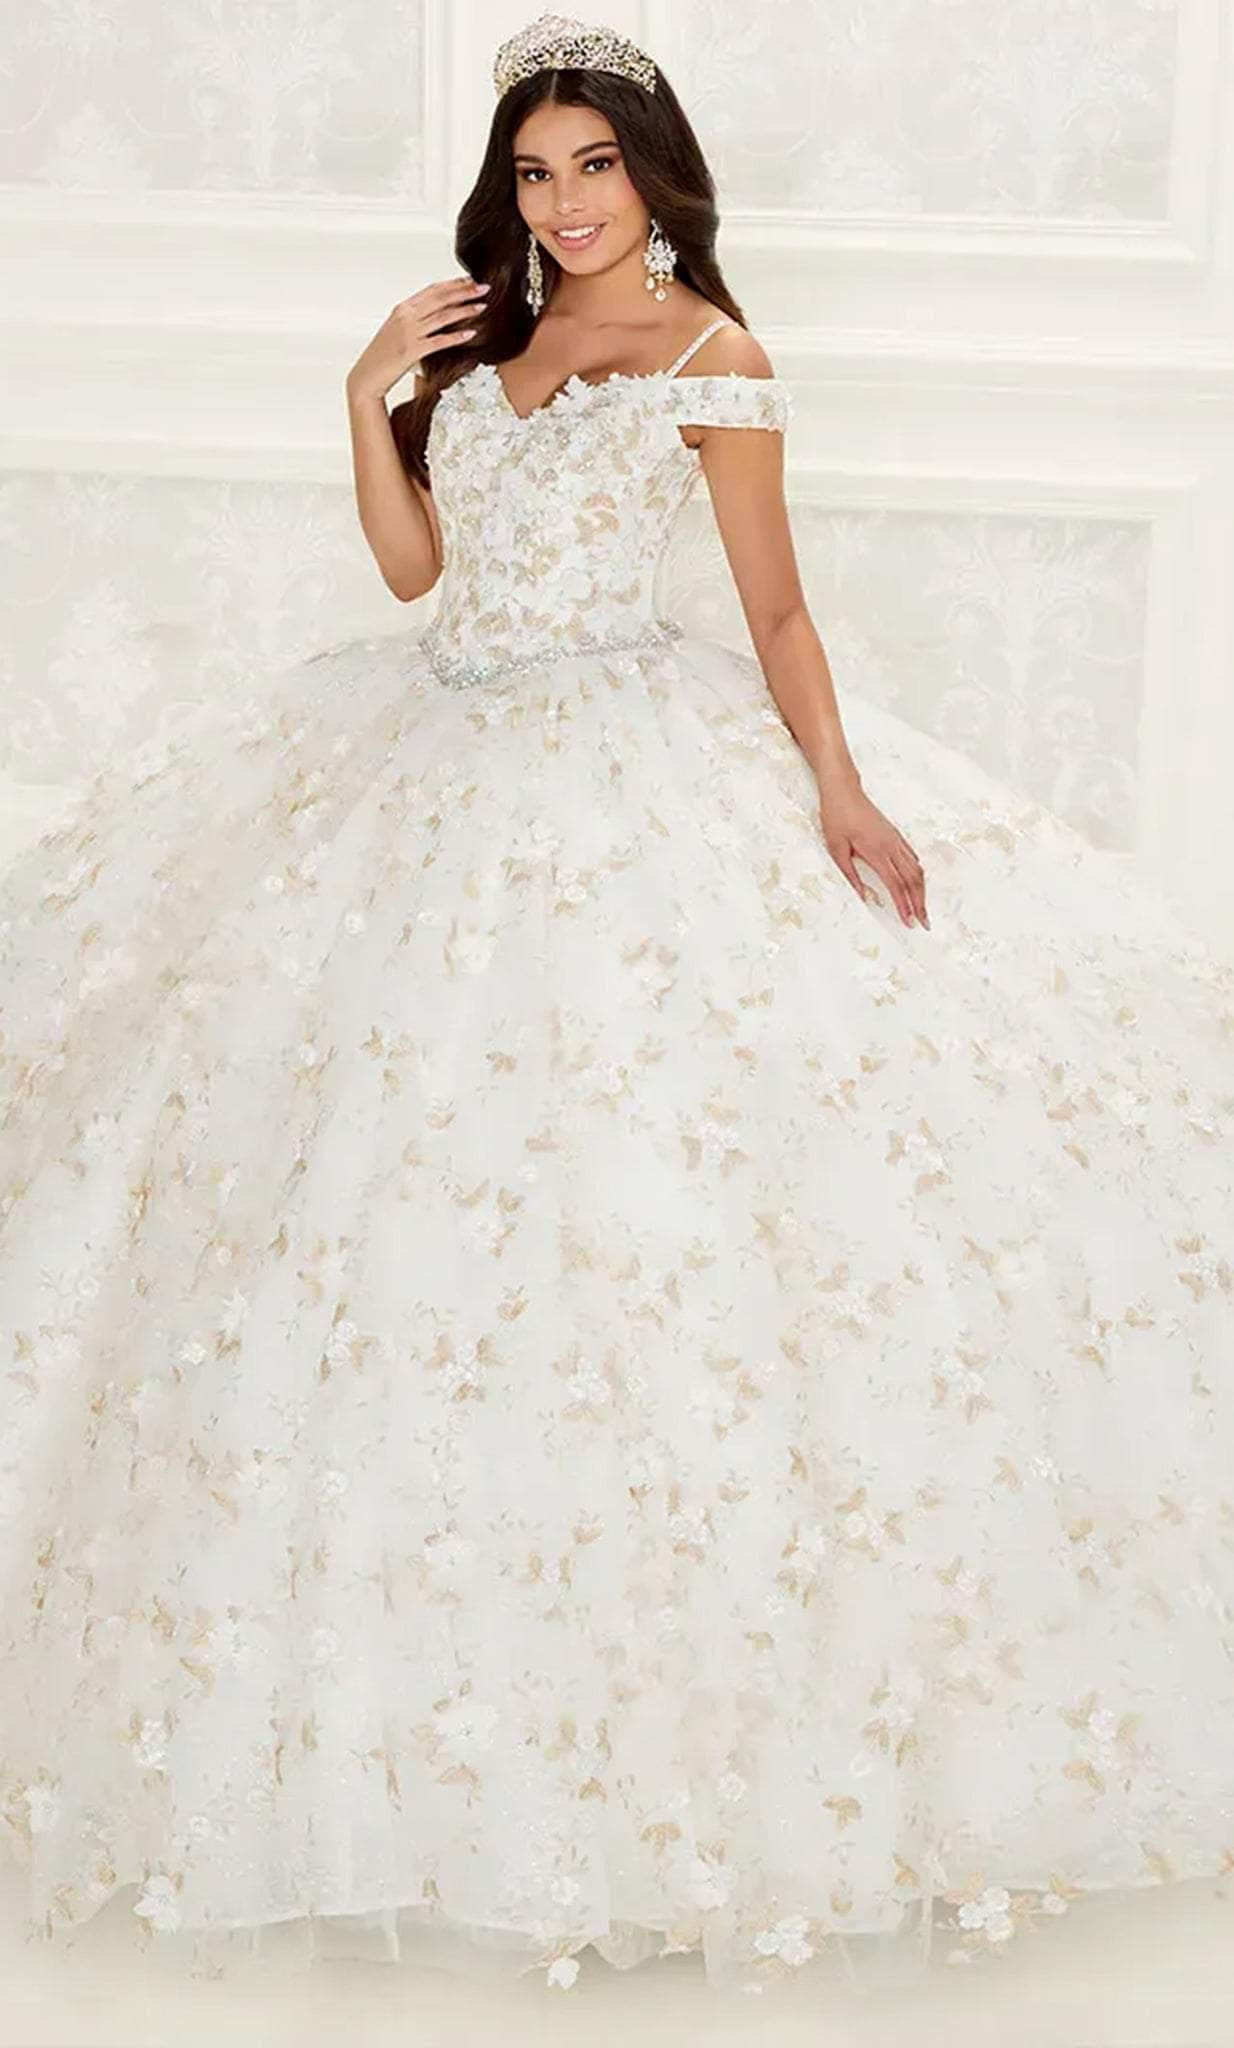 Image of Princesa by Ariana Vara PR30084 - Blossom Ornate Ballgown